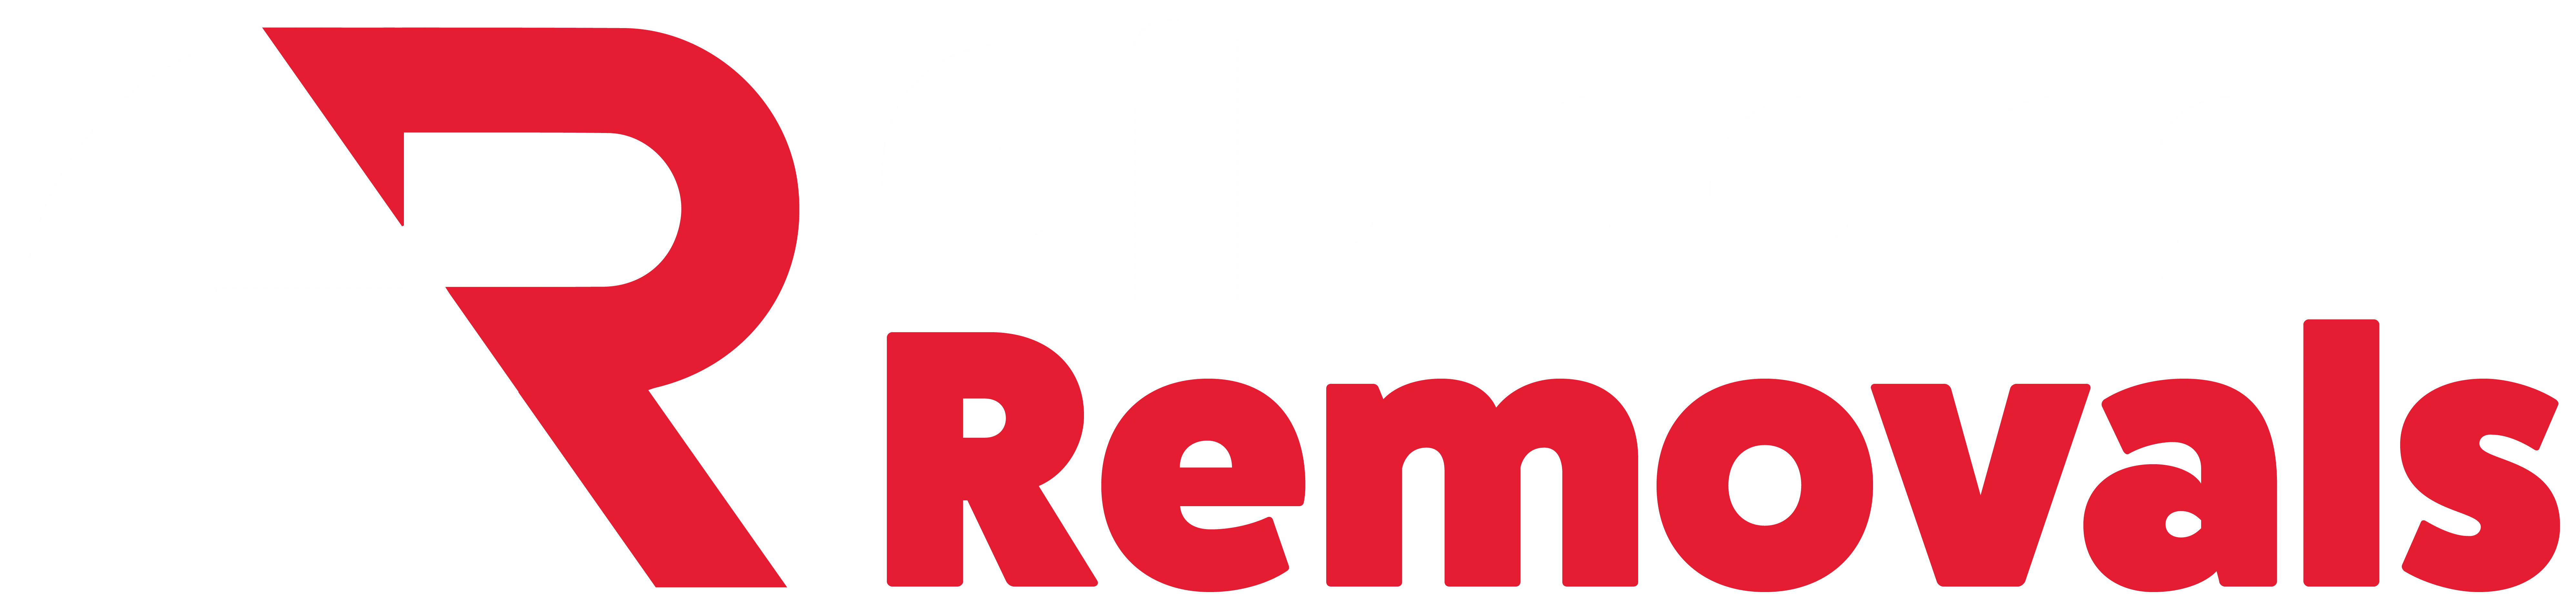 Company logo alternate colour